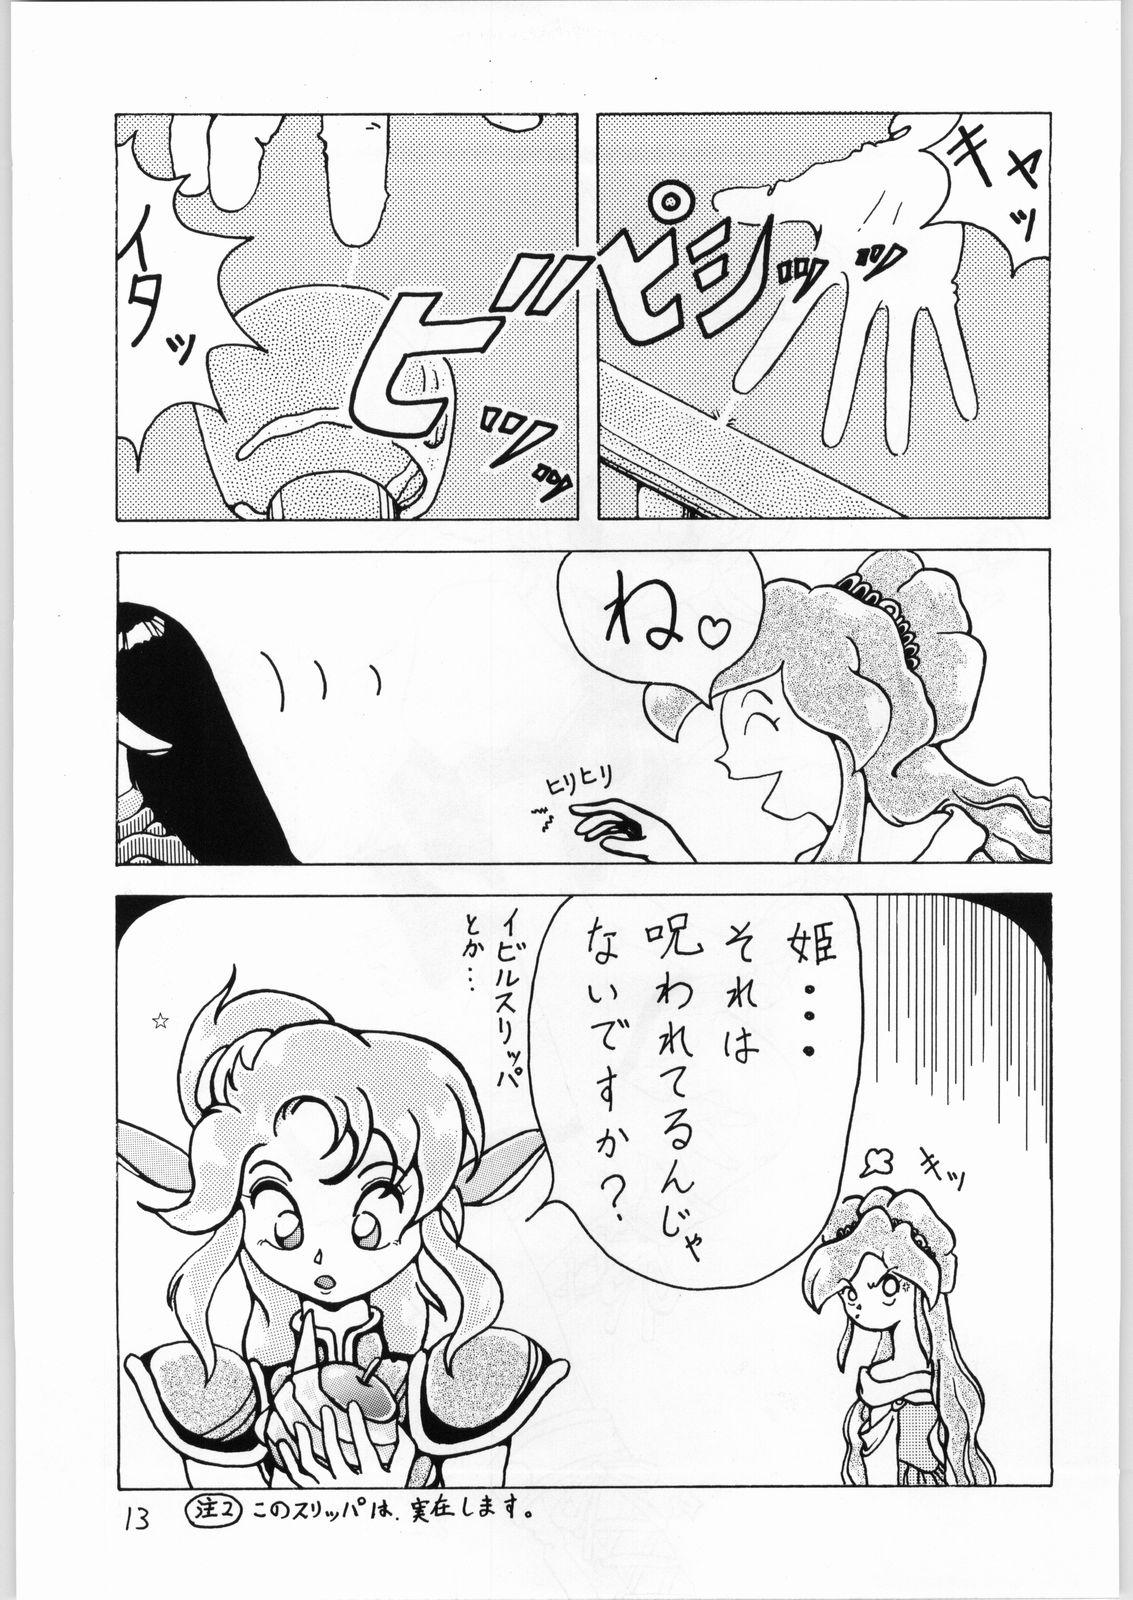 Butt Plug Dance of Princess 3 - Sailor moon Tenchi muyo Akazukin cha cha Minky momo Ng knight lamune and 40 Ride - Page 12